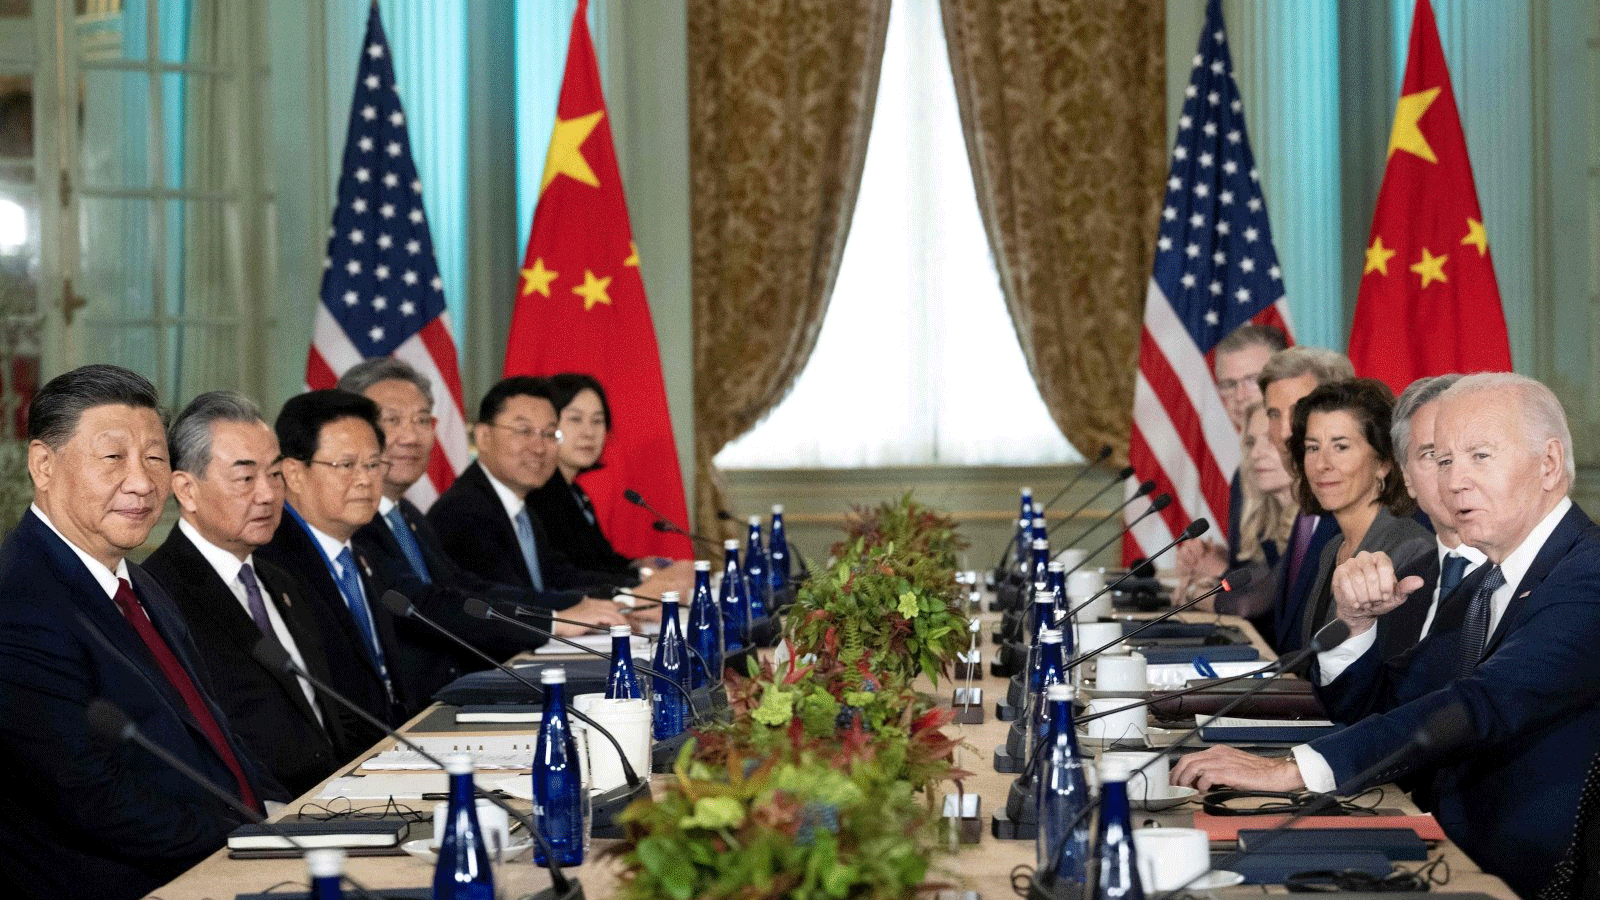 الرئيس الأميركي جو بايدن (على اليمين) يلتقي بالرئيس الصيني شي جين بينغ (يسار) خلال أسبوع قادة منظمة التعاون الاقتصادي لآسيا والمحيط الهادئ (APEC) في وودسايد، كاليفورنيا، الولايات المتحدة. 15 نوفمبر(تشرين الثاني) 2023